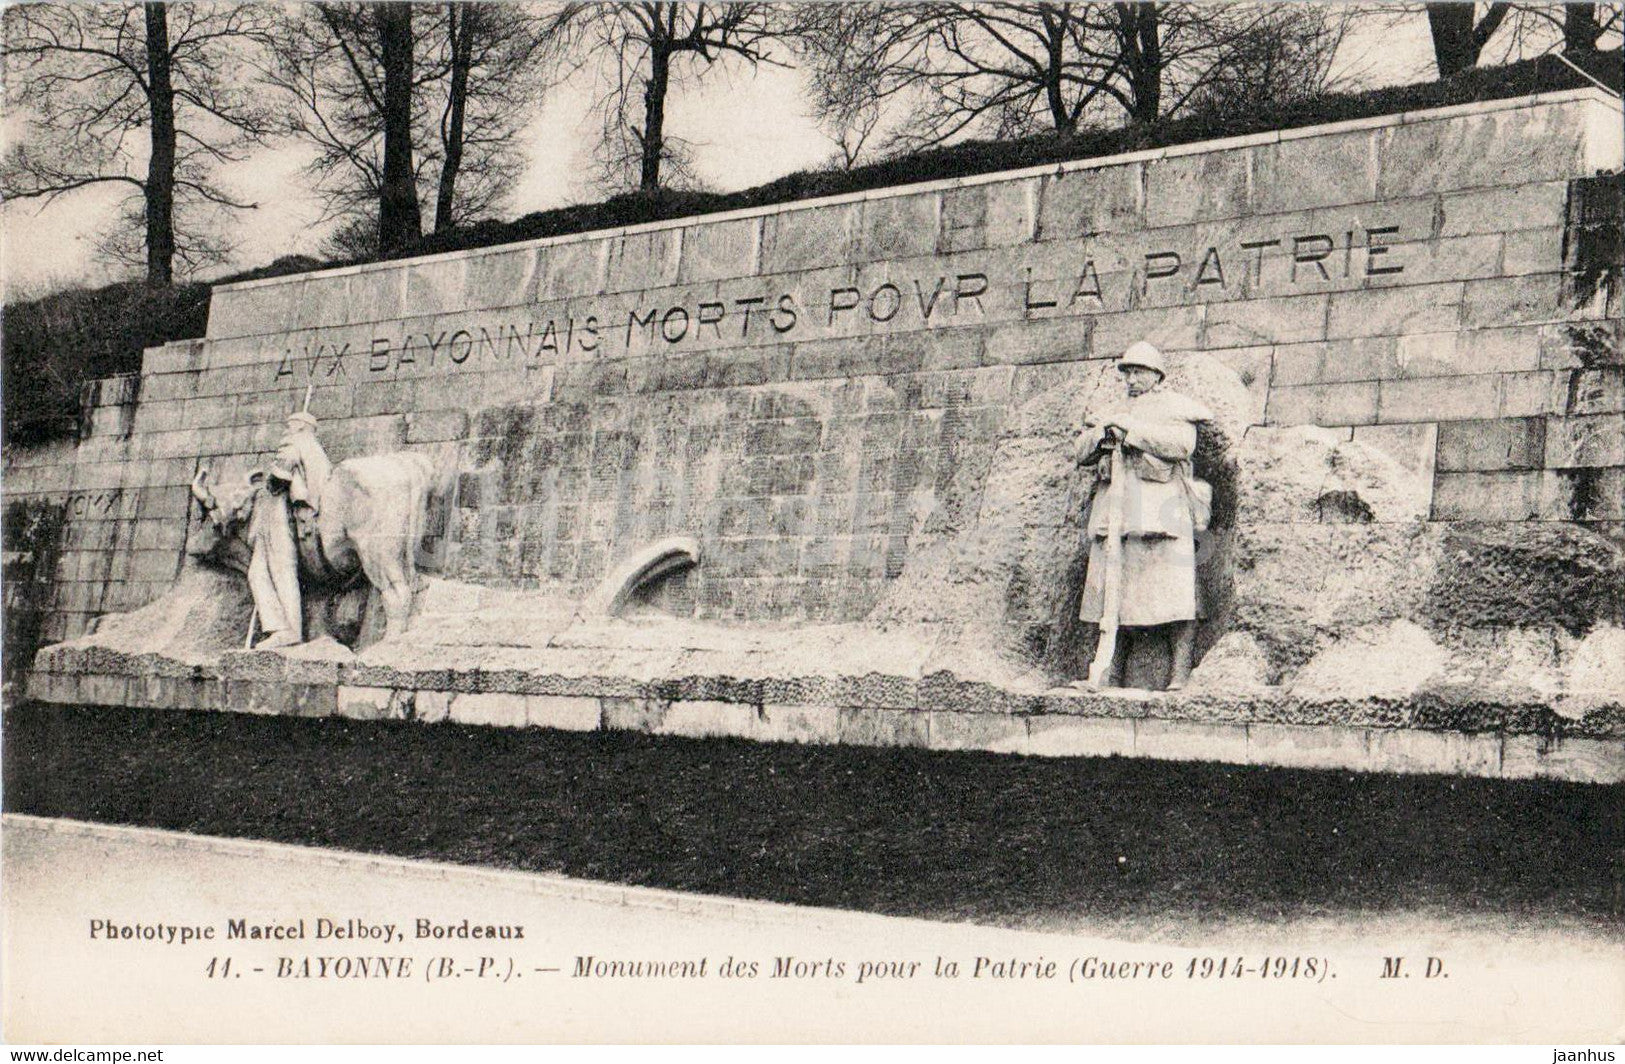 Bayonne - Monument des Morts pour la Patrie - WWI - military monument - 11 - old postcard - France - unused - JH Postcards